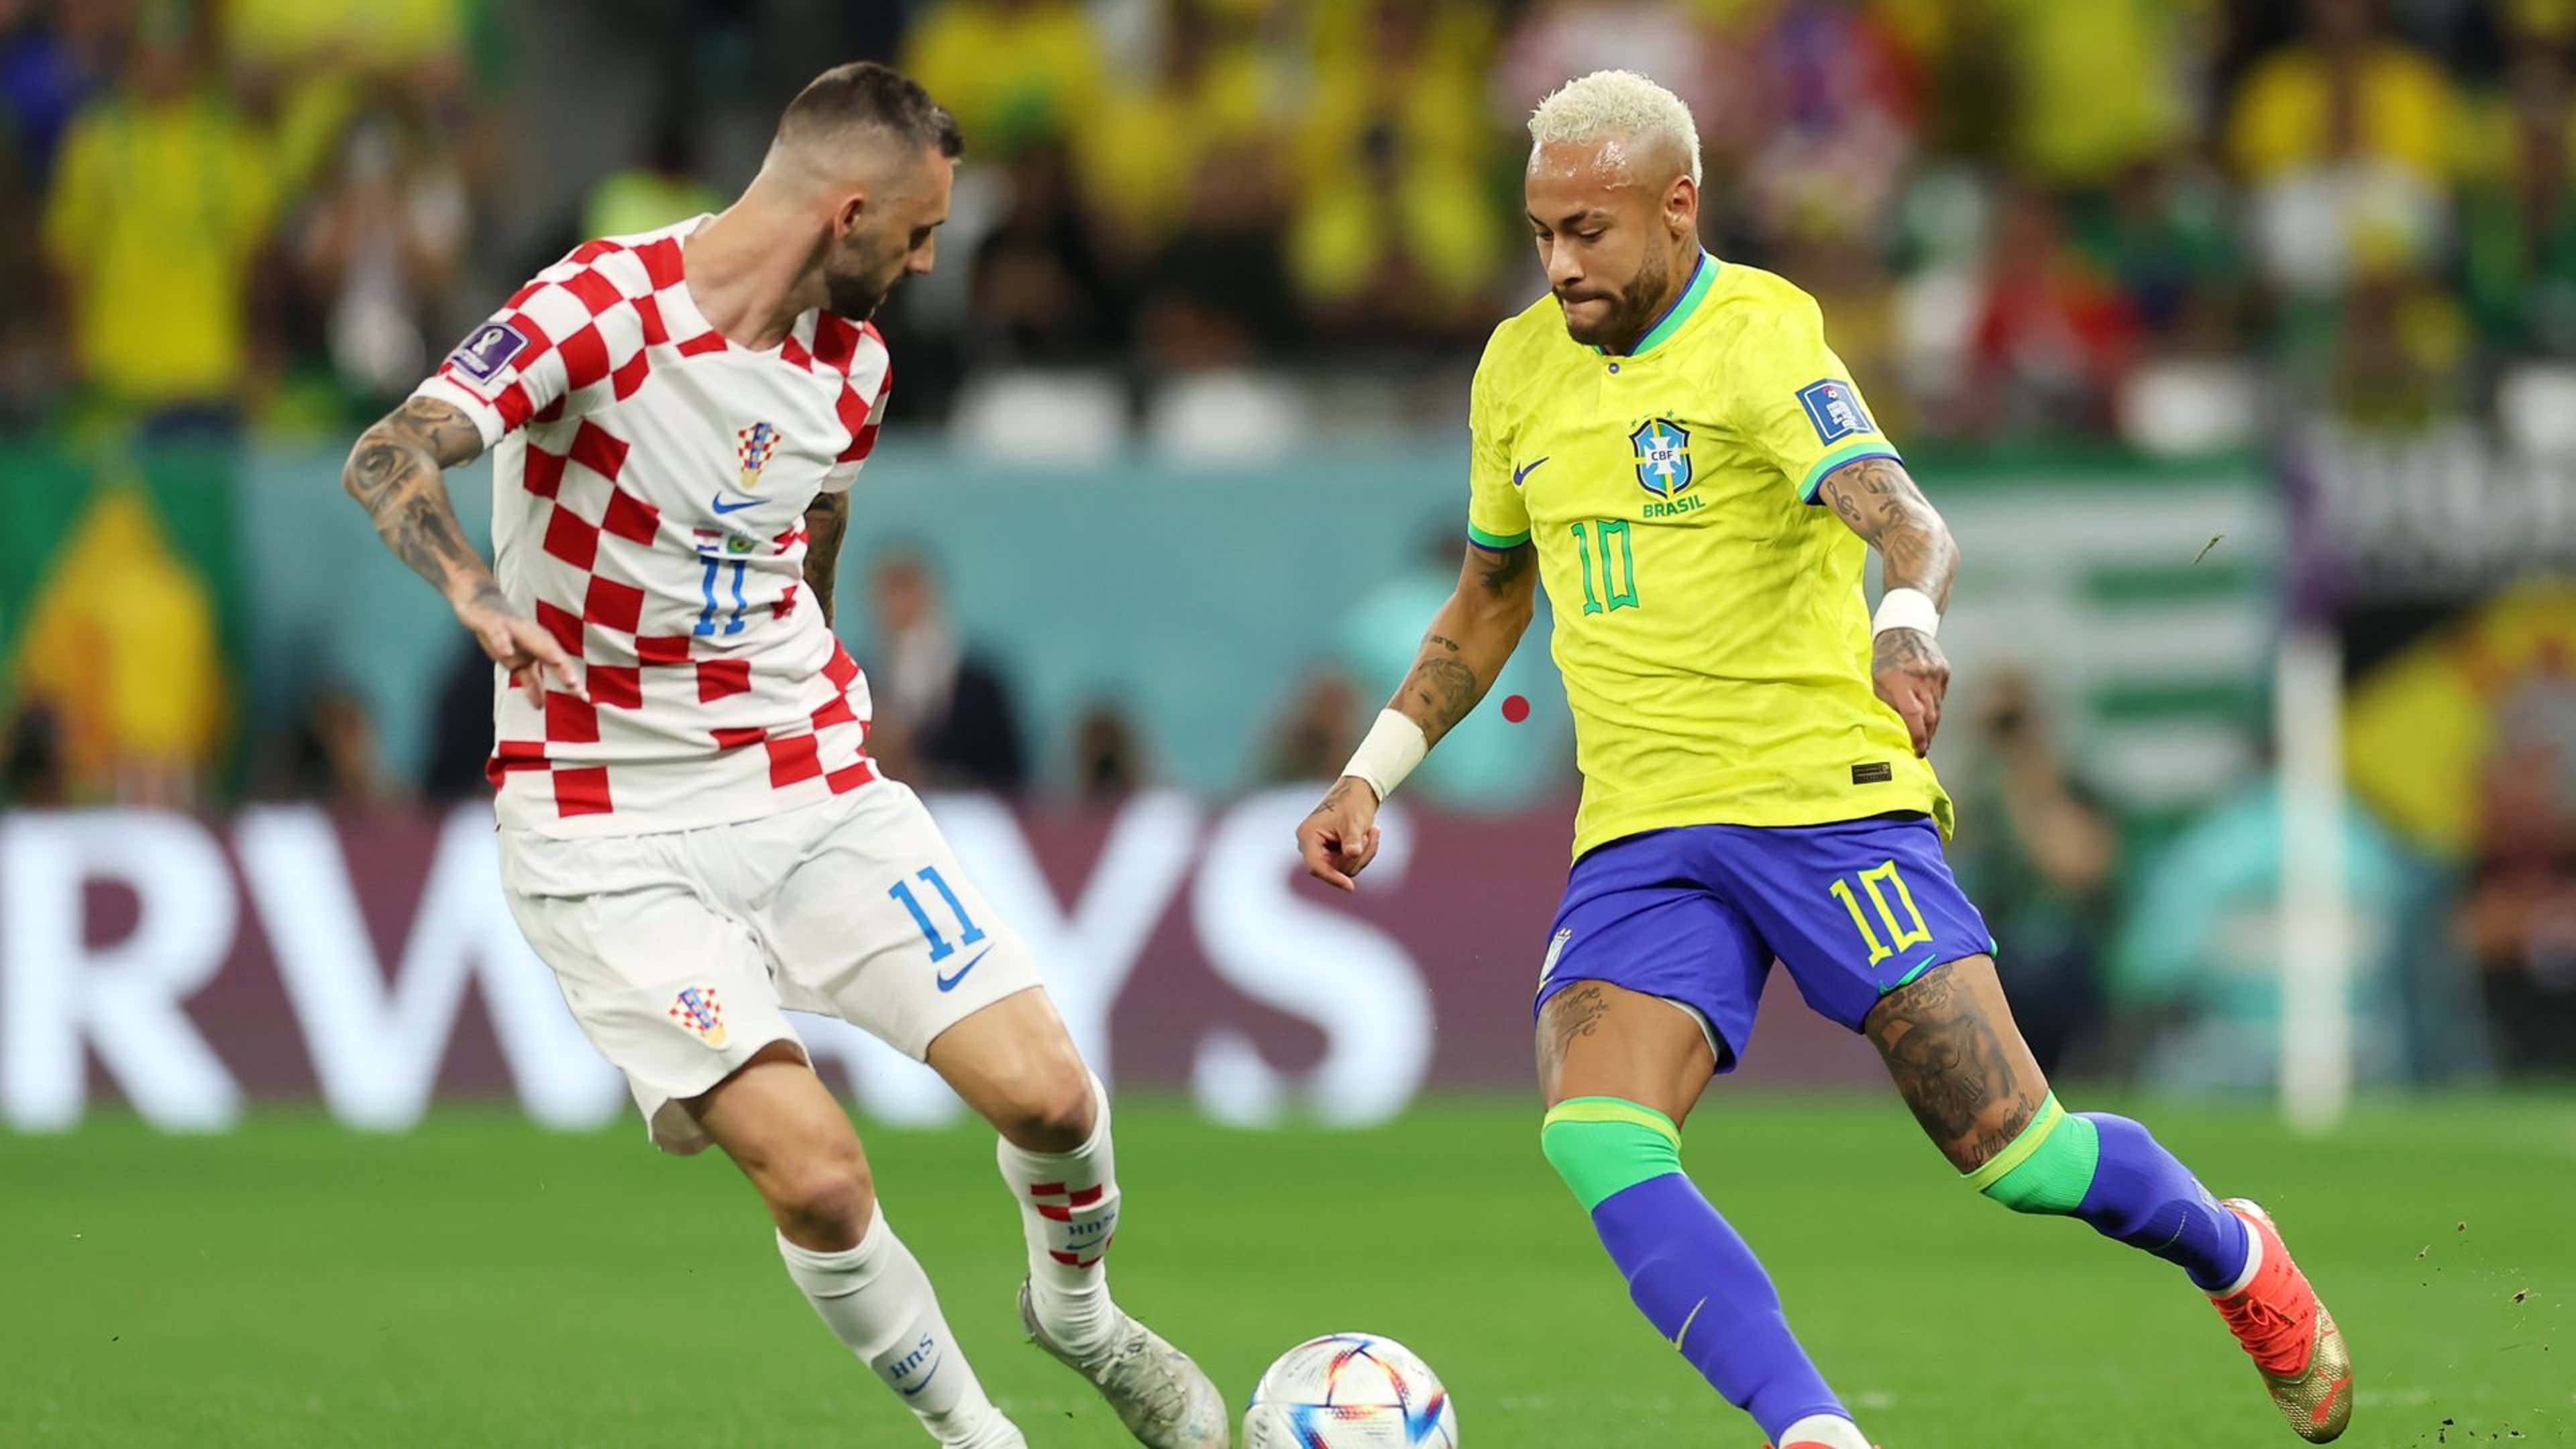 Copa do Mundo: Assista ao vivo e de graça ao jogo Brasil x Croácia